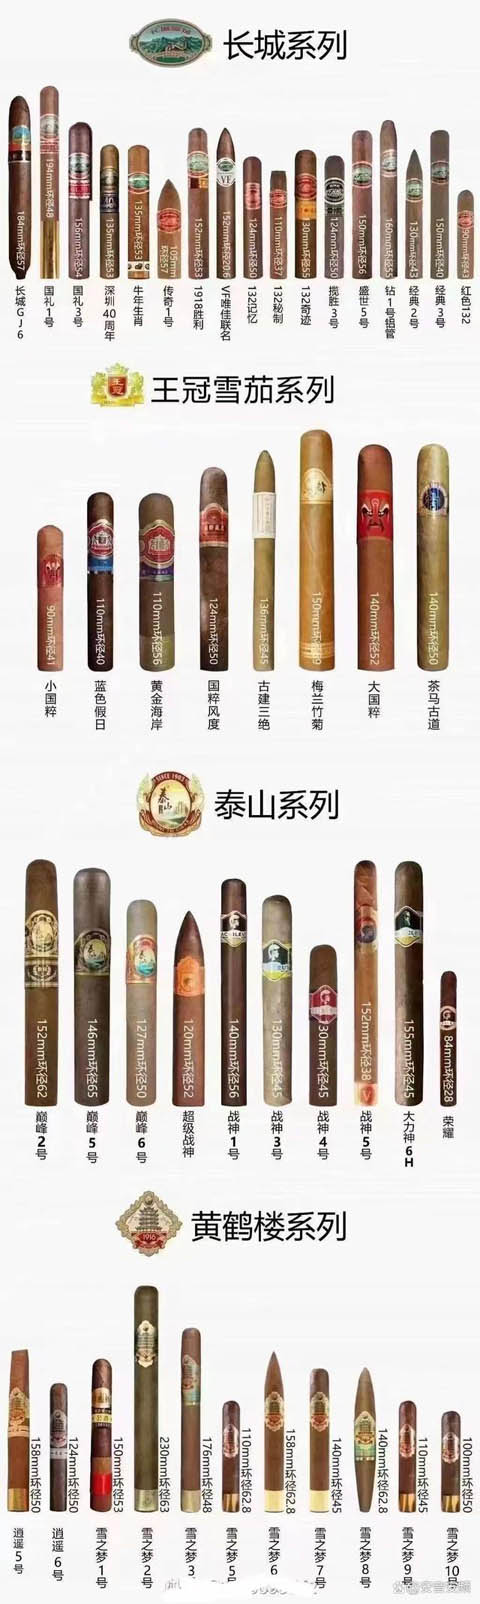 国产雪茄尺寸大小